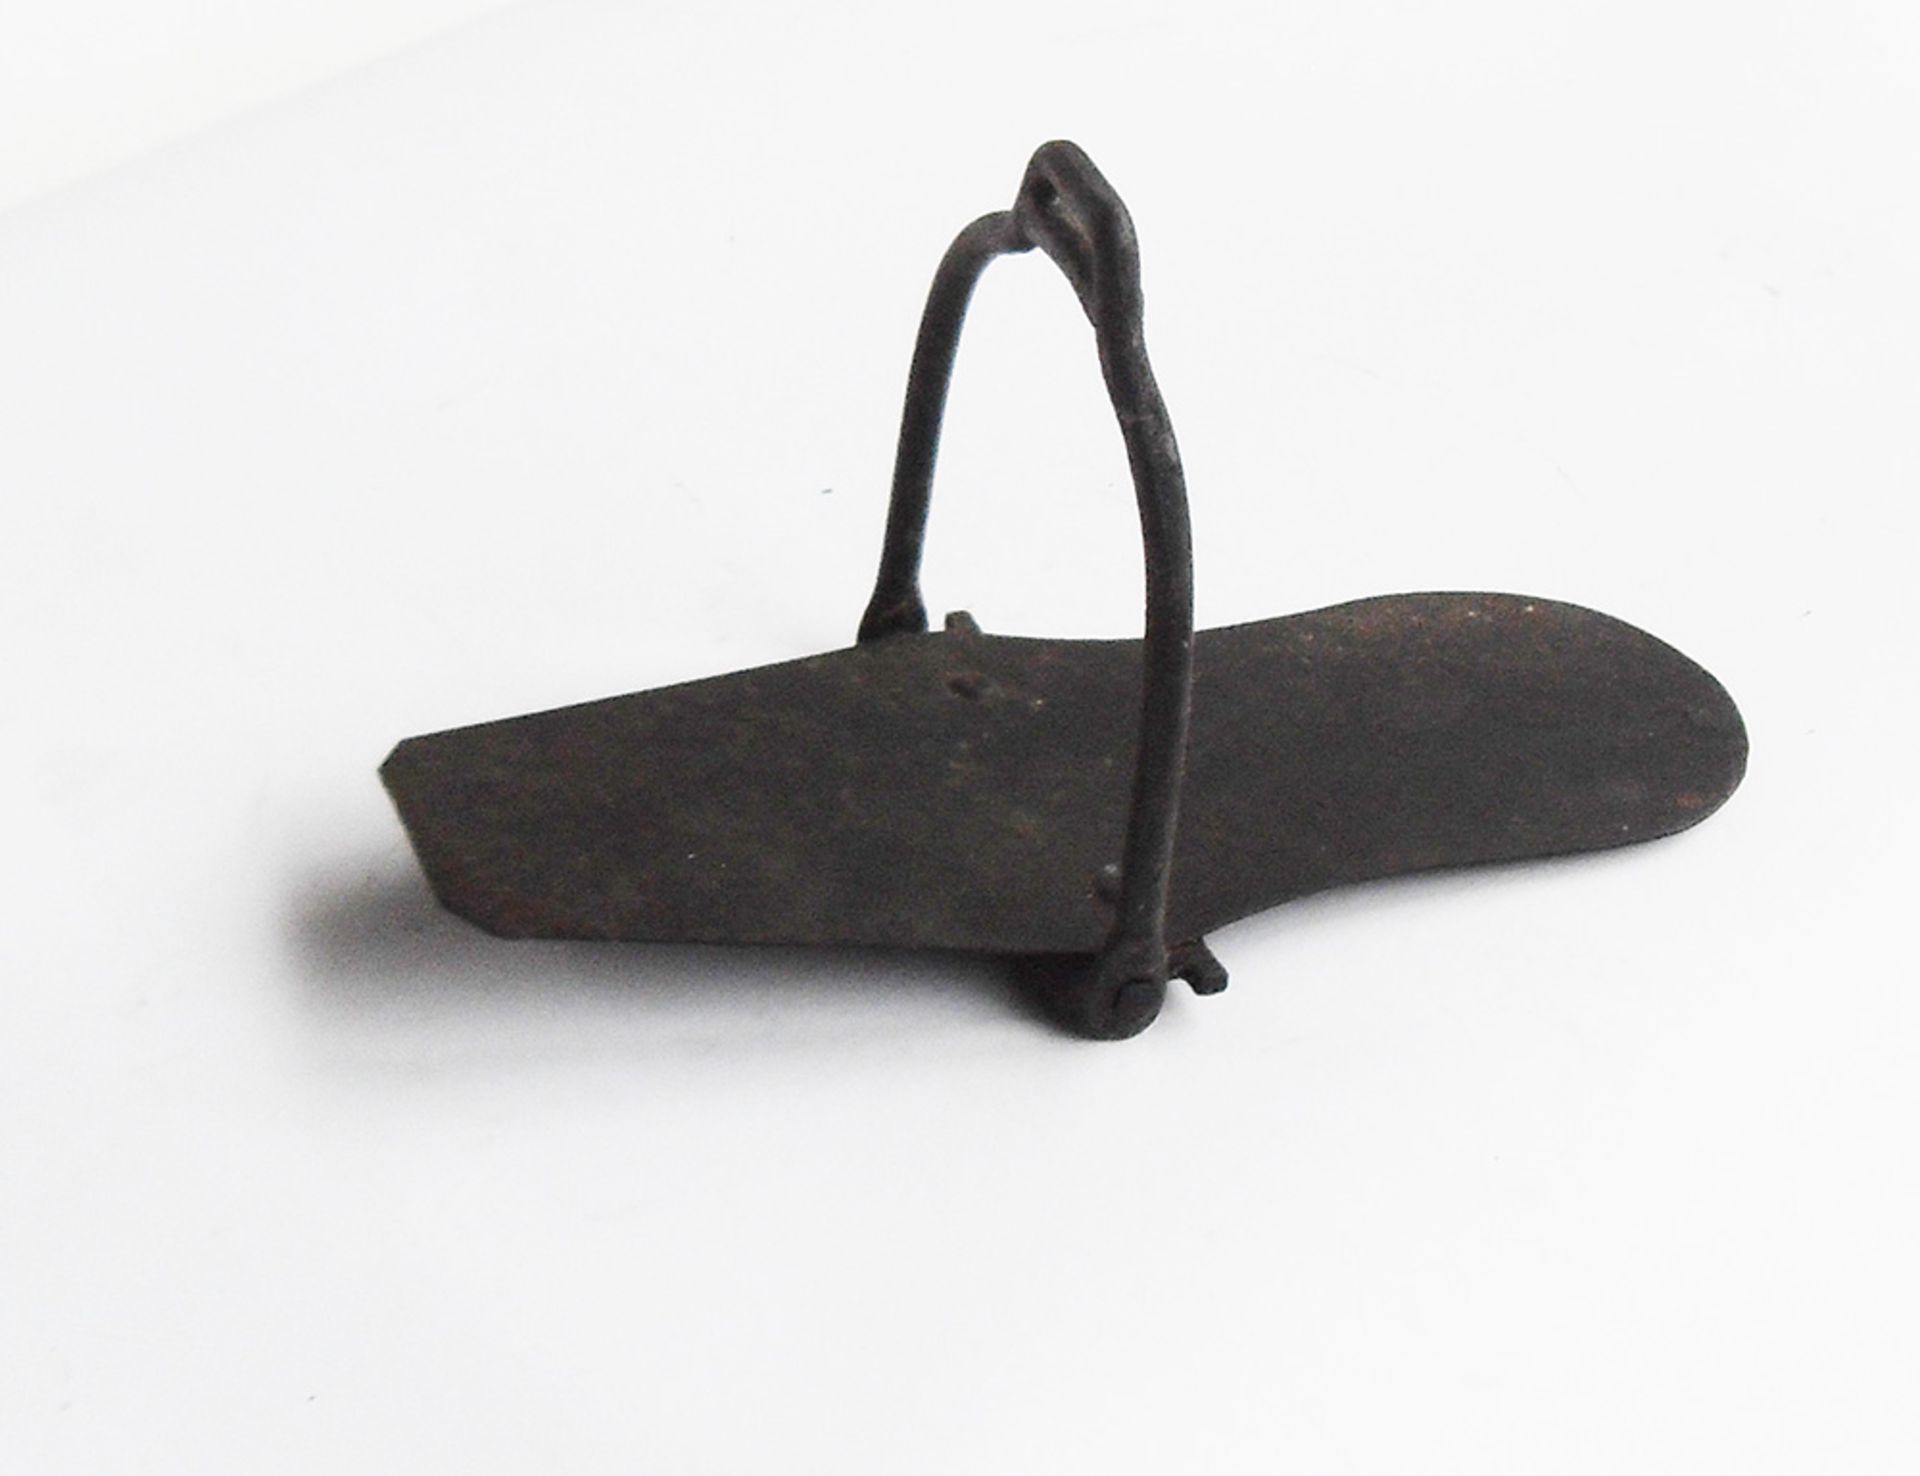 Antique slipper stirrup - Image 2 of 2